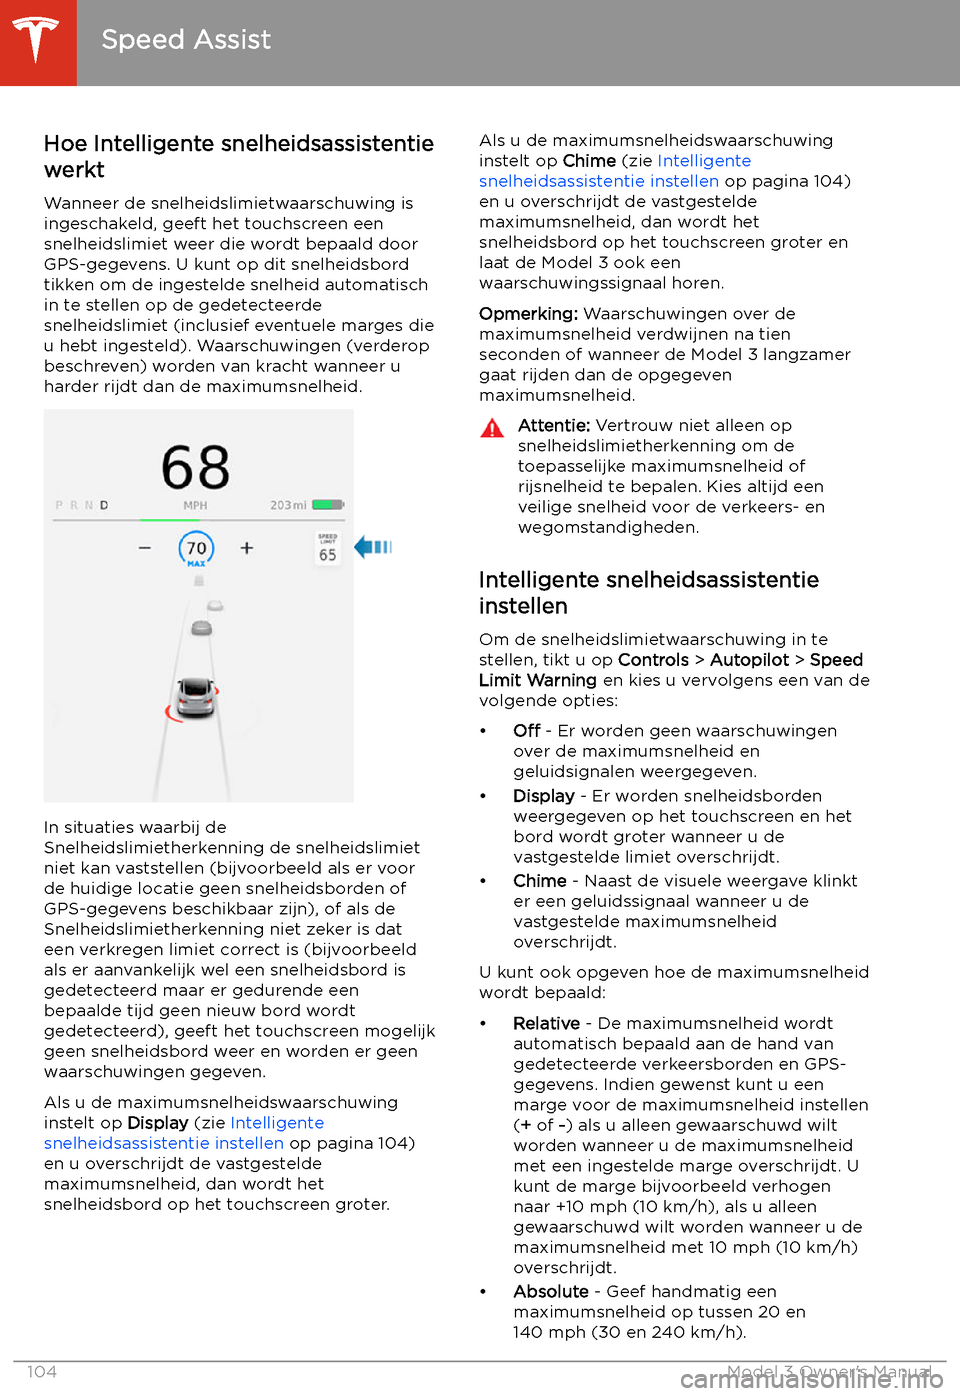 TESLA MODEL 3 2019  Handleiding (in Dutch) Speed Assist
Hoe Intelligente snelheidsassistentie werkt
Wanneer de snelheidslimietwaarschuwing is
ingeschakeld, geeft het touchscreen een
snelheidslimiet weer die wordt bepaald door GPS-gegevens. U k